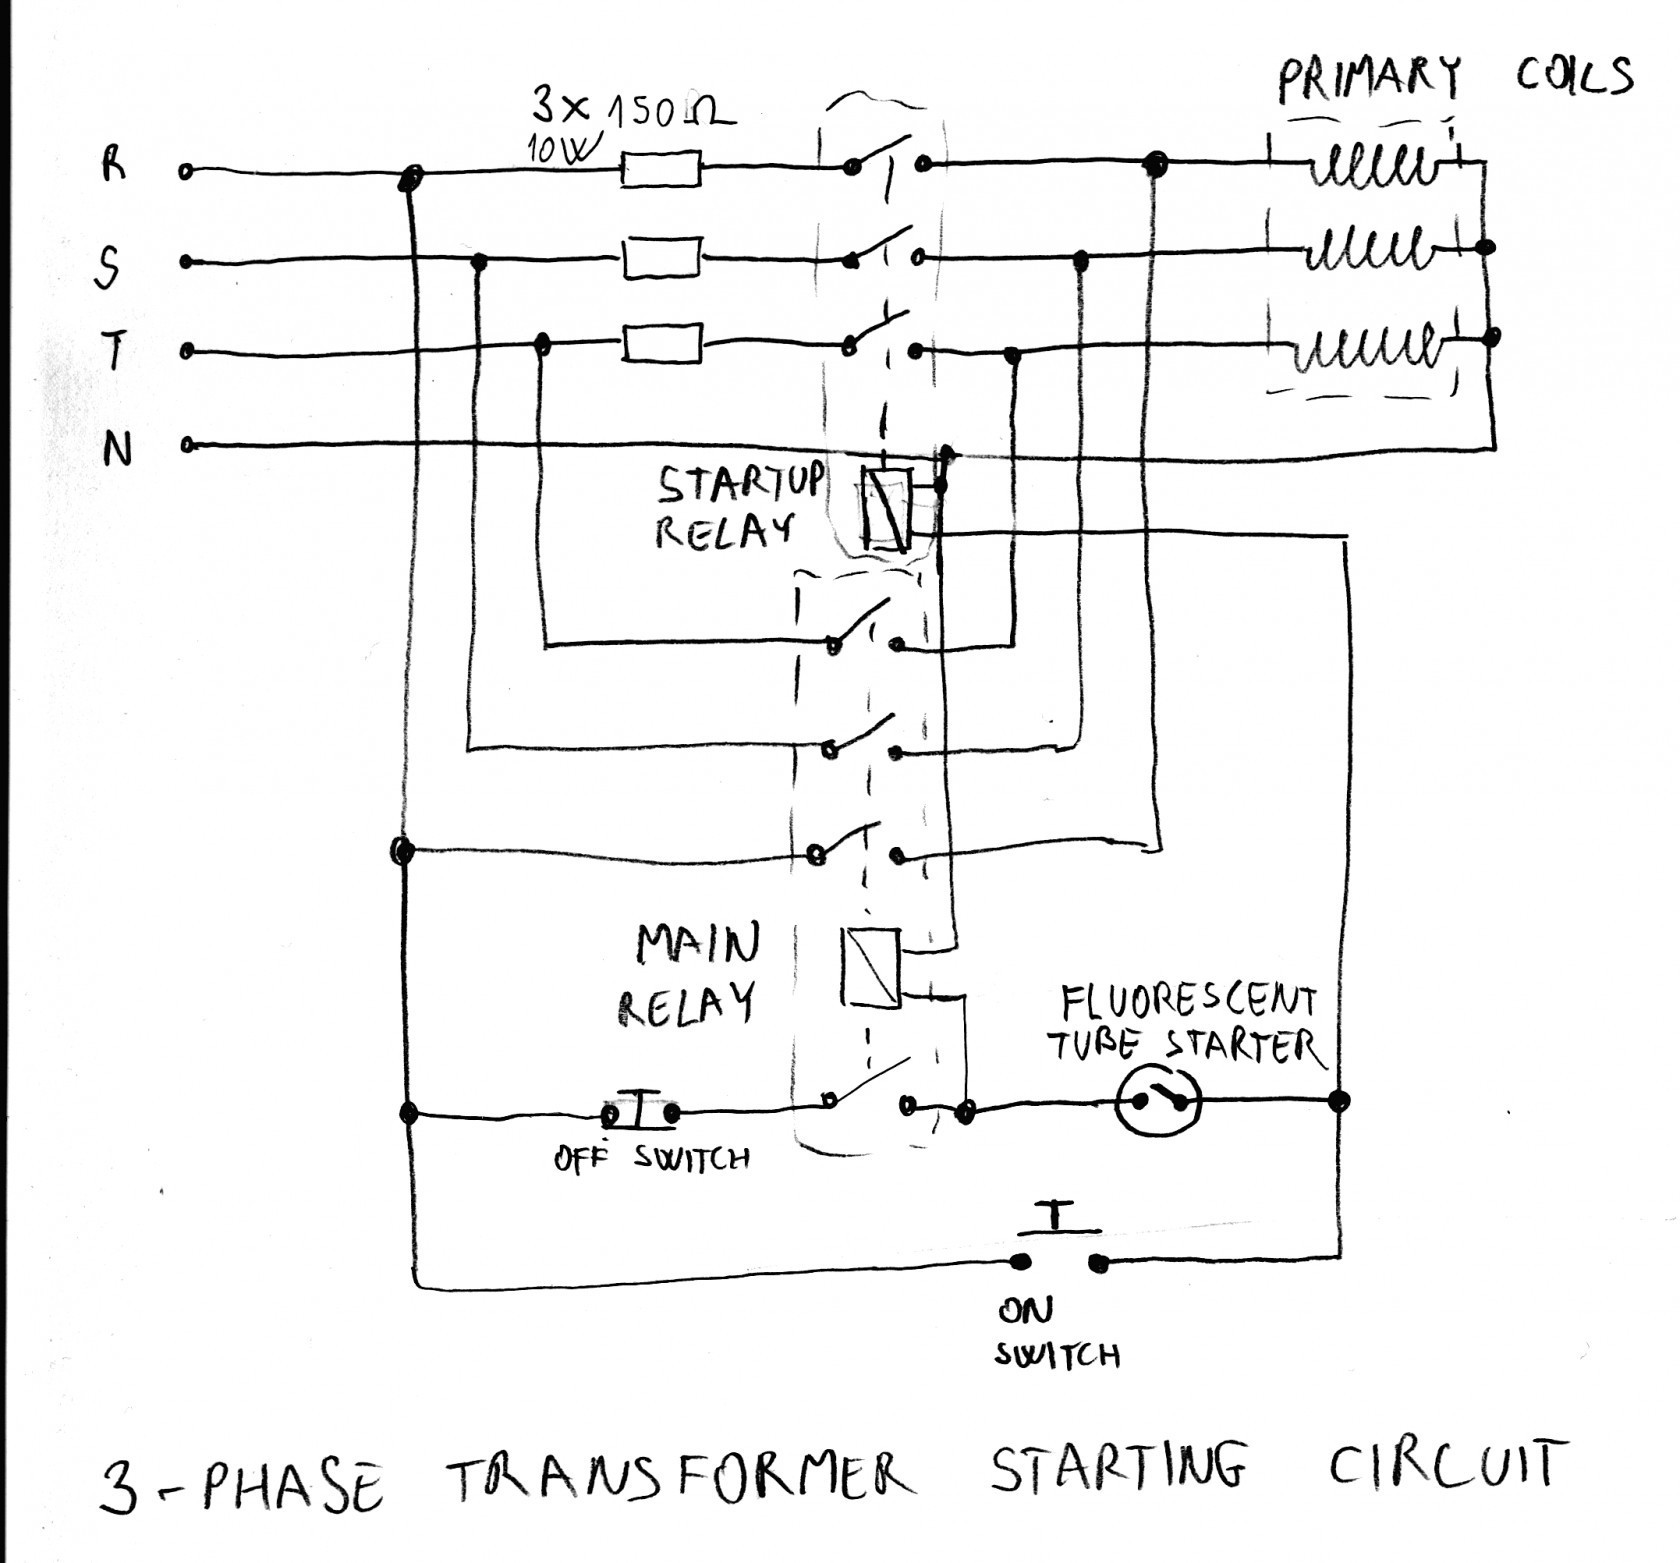 Single Phase Transformer Wiring Diagram Single Phase Transformer Wiring Diagram Best 480v Single Phase Of Single Phase Transformer Wiring Diagram